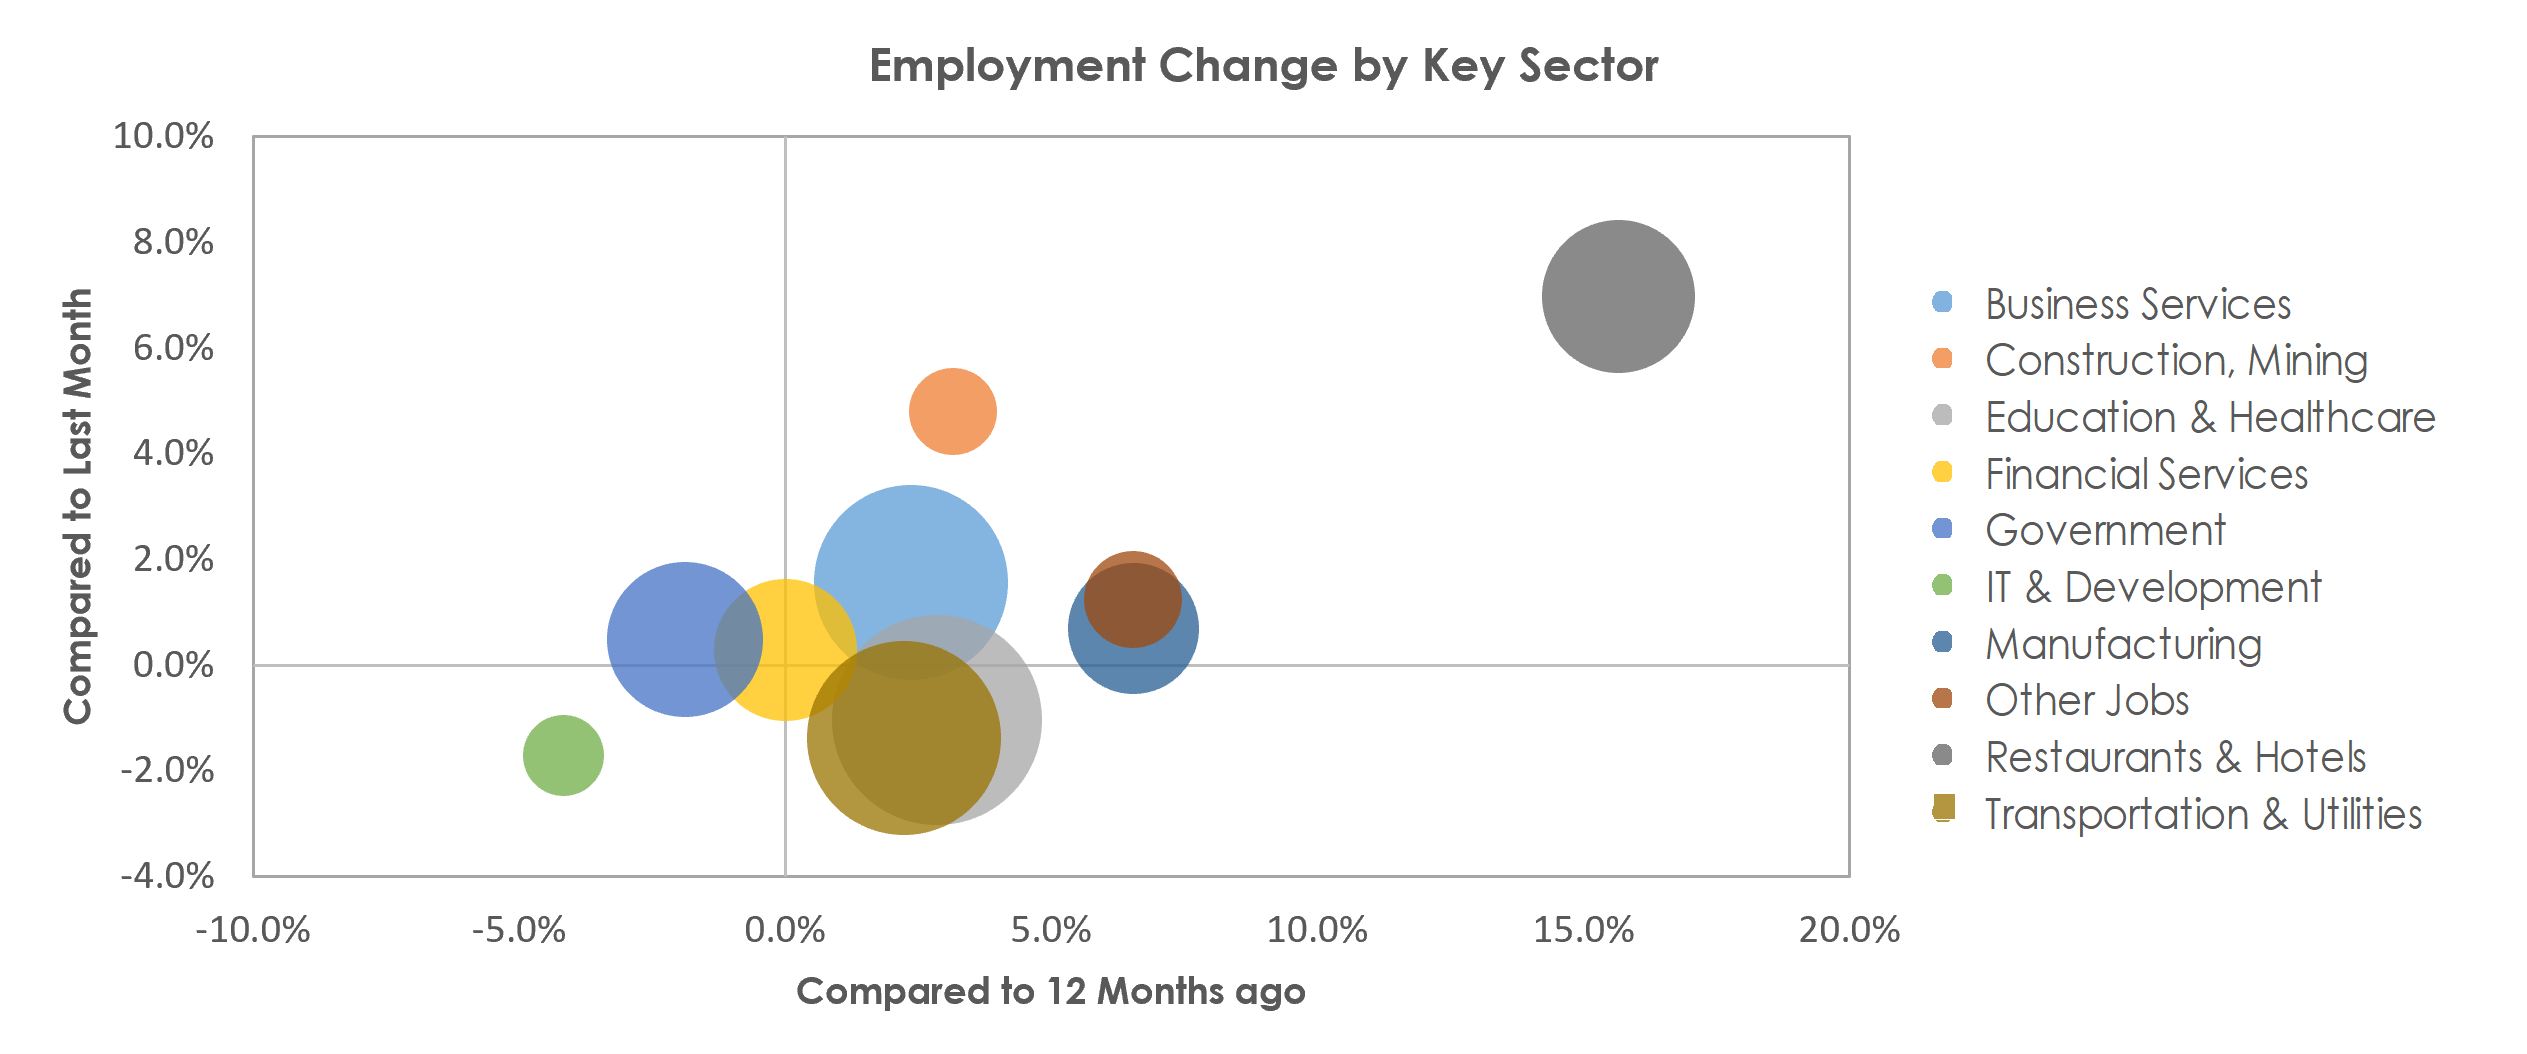 Bridgeport-Stamford-Norwalk, CT Unemployment by Industry April 2022